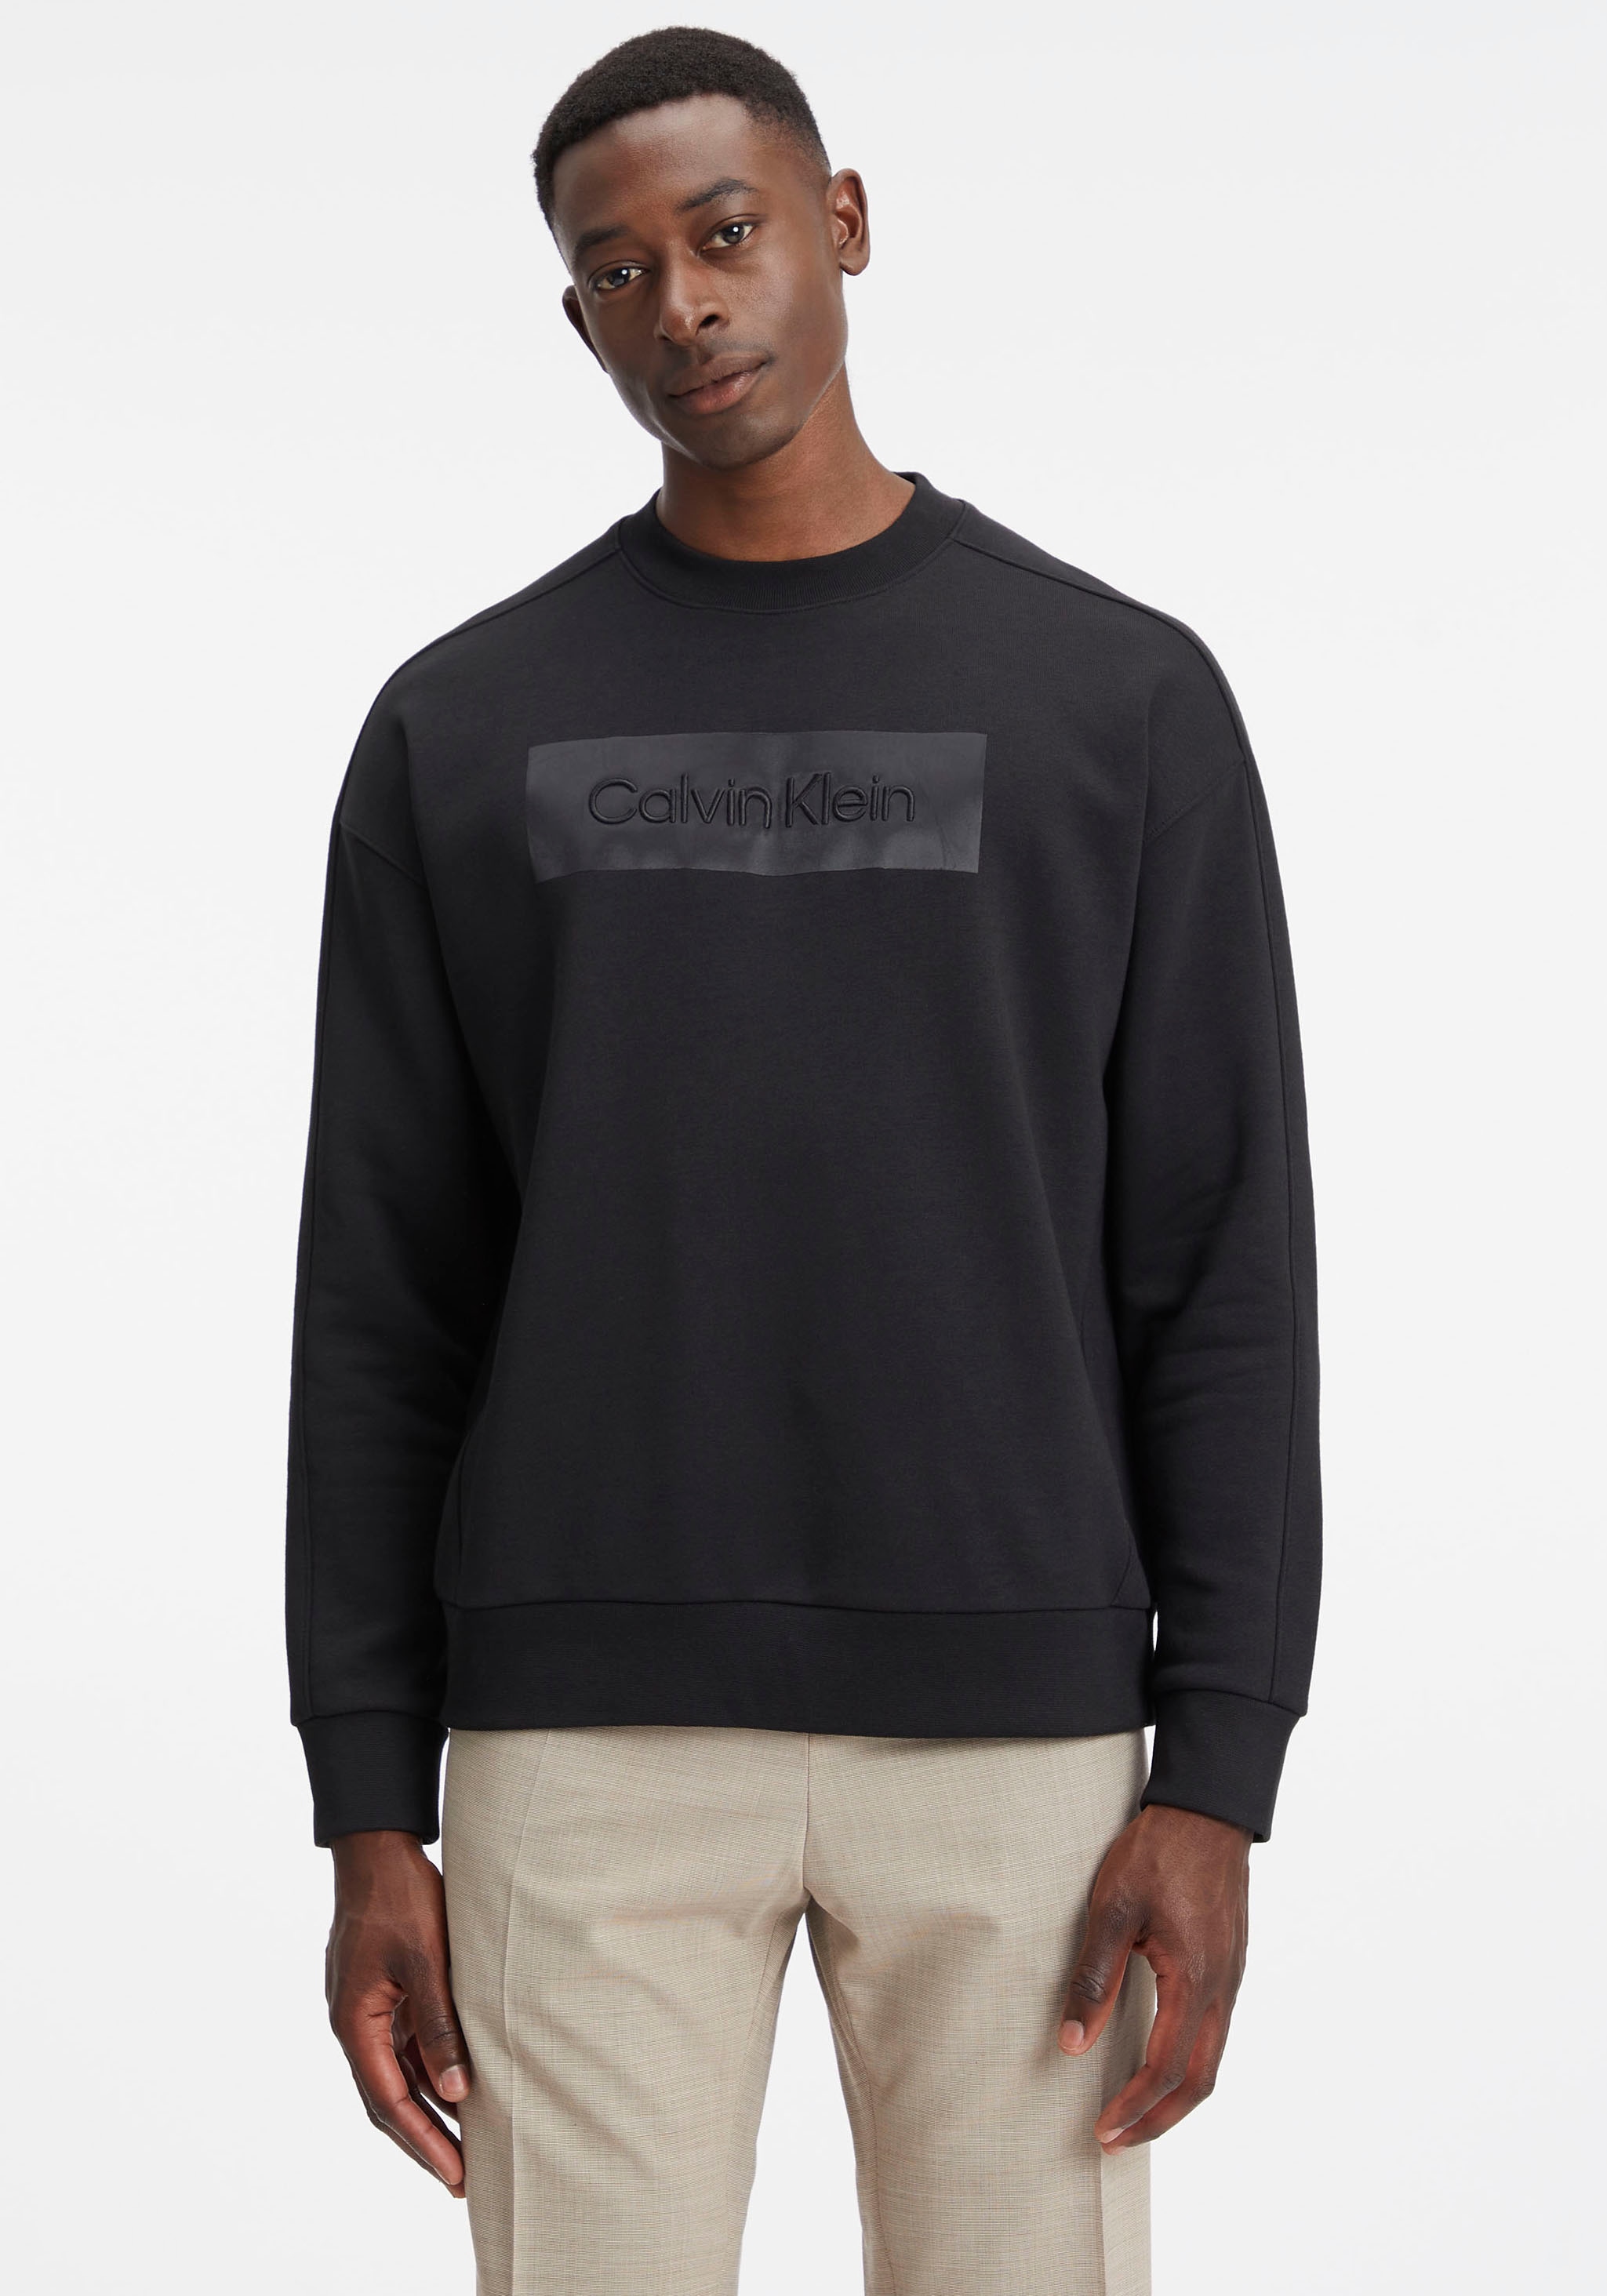 SWEATSHIRT«, im OTTO Shop hochschließendem Klein »EMBROIDERED Sweater Calvin Online COMFORT mit Rundhalsausschnitt